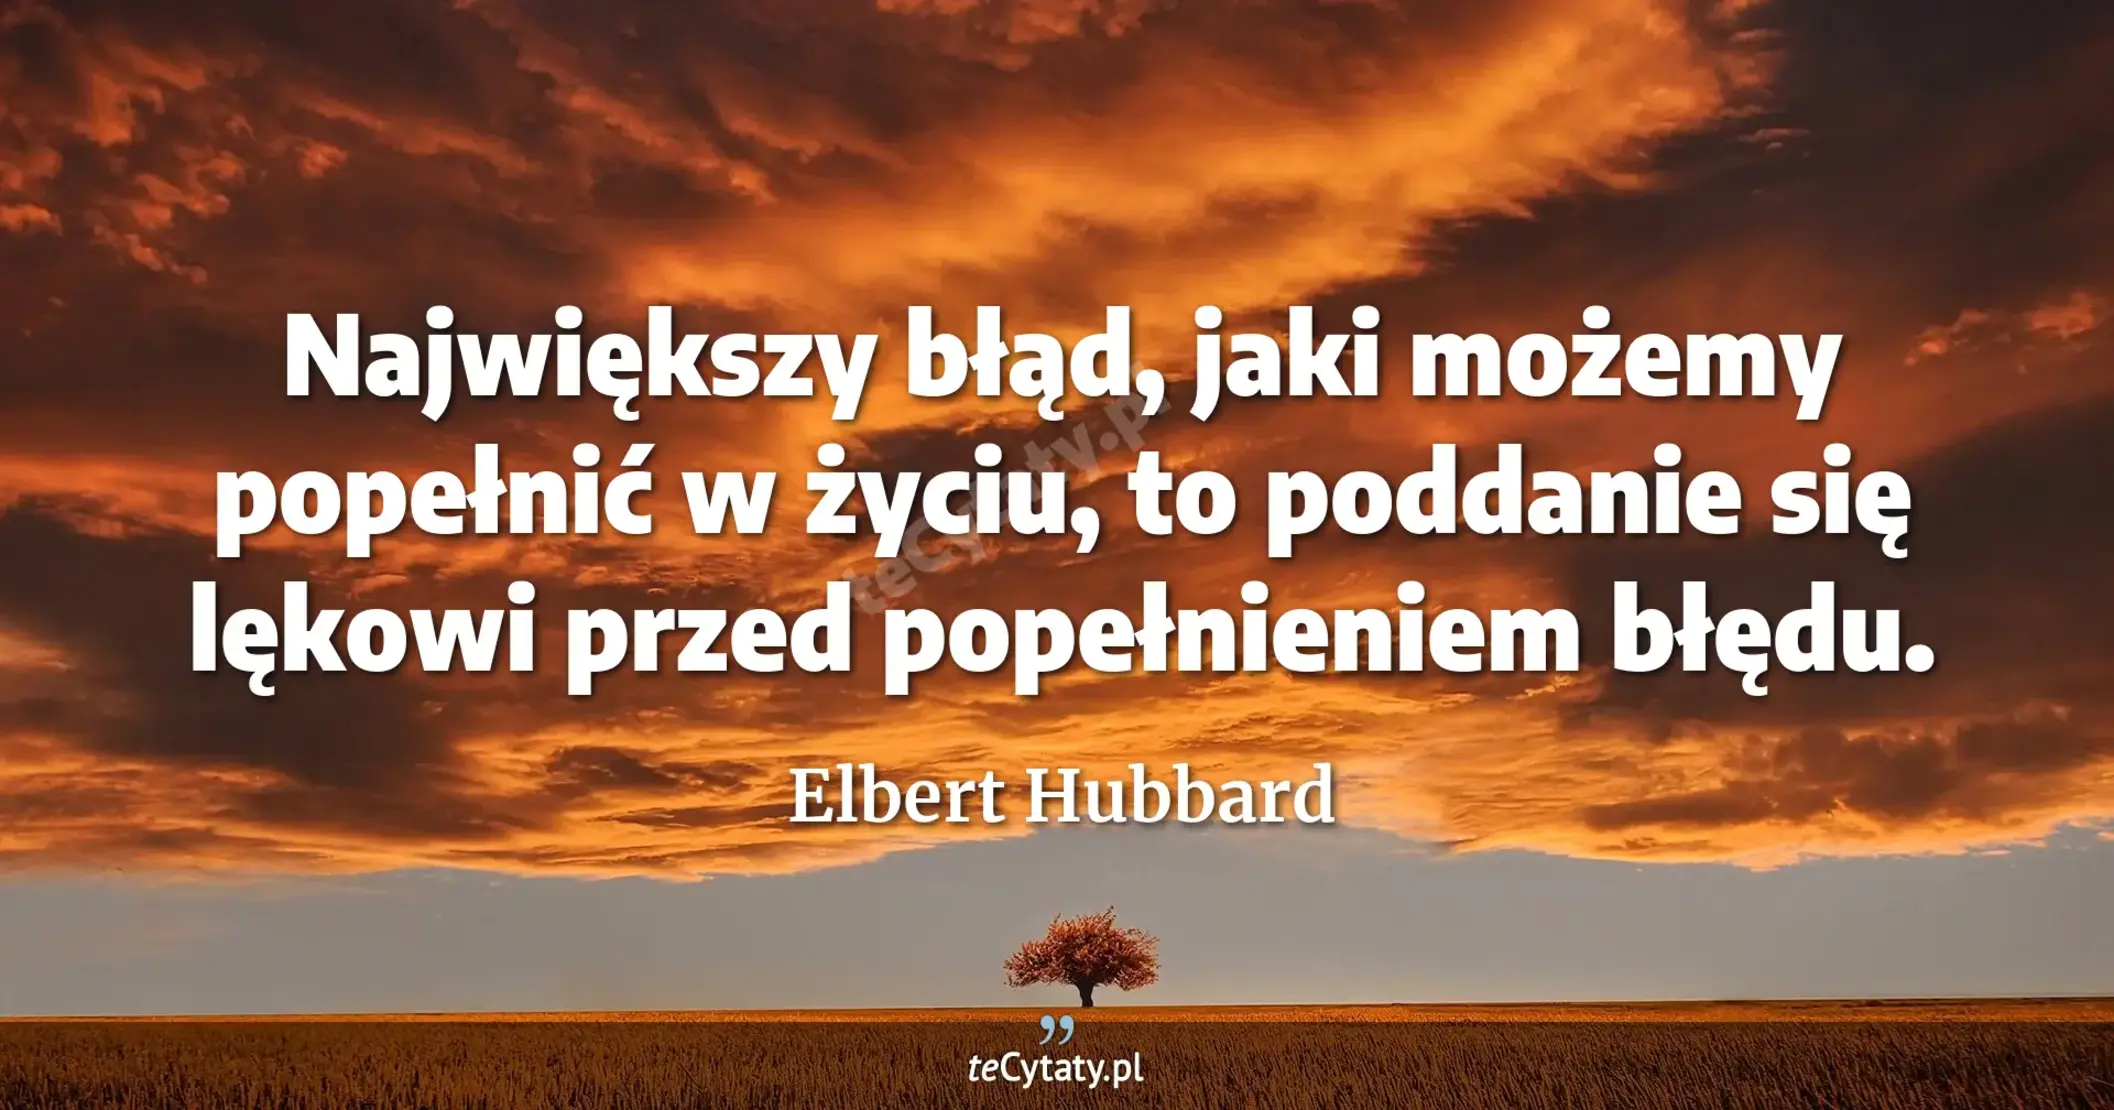 Największy błąd, jaki możemy popełnić w życiu, to poddanie się lękowi przed popełnieniem błędu. - Elbert Hubbard